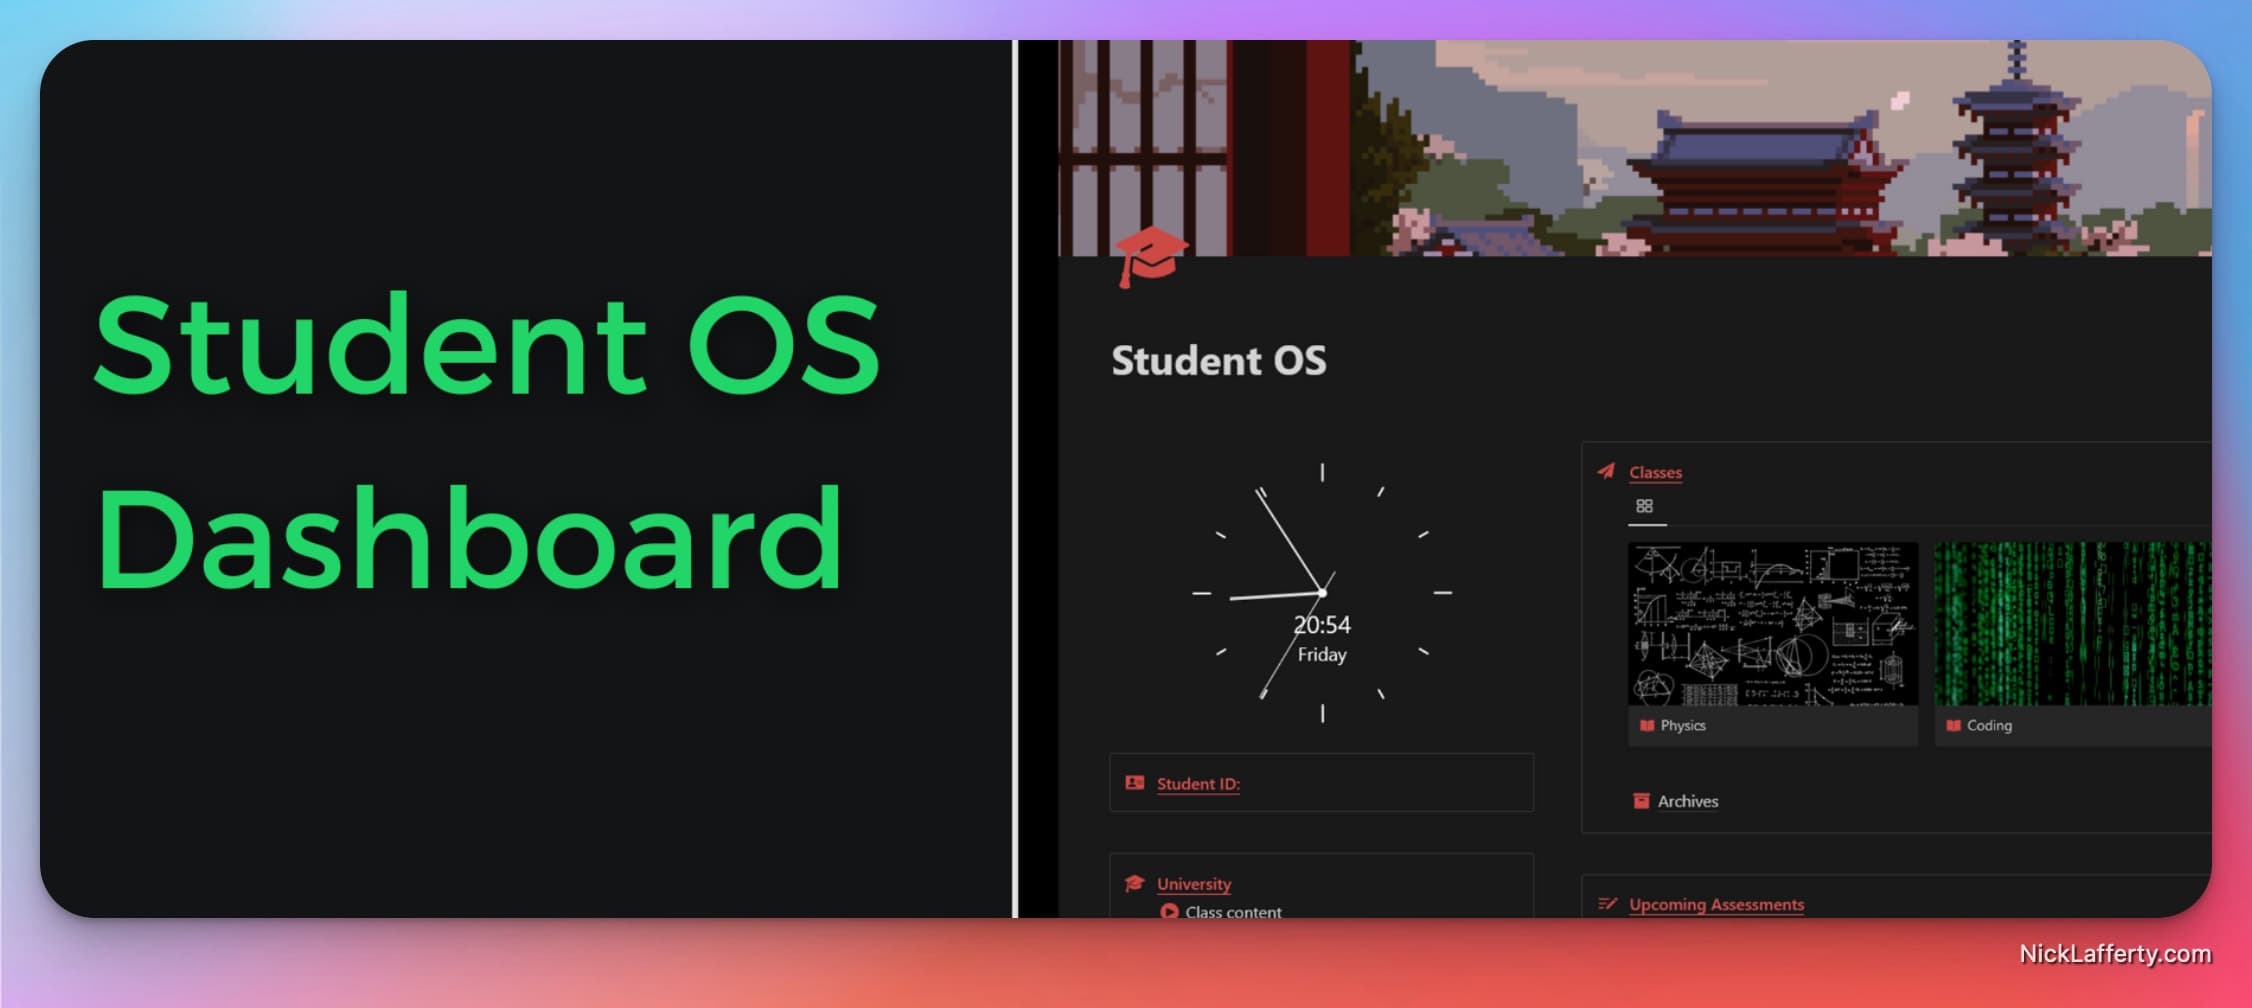 Student OS Dashboard Screenshot